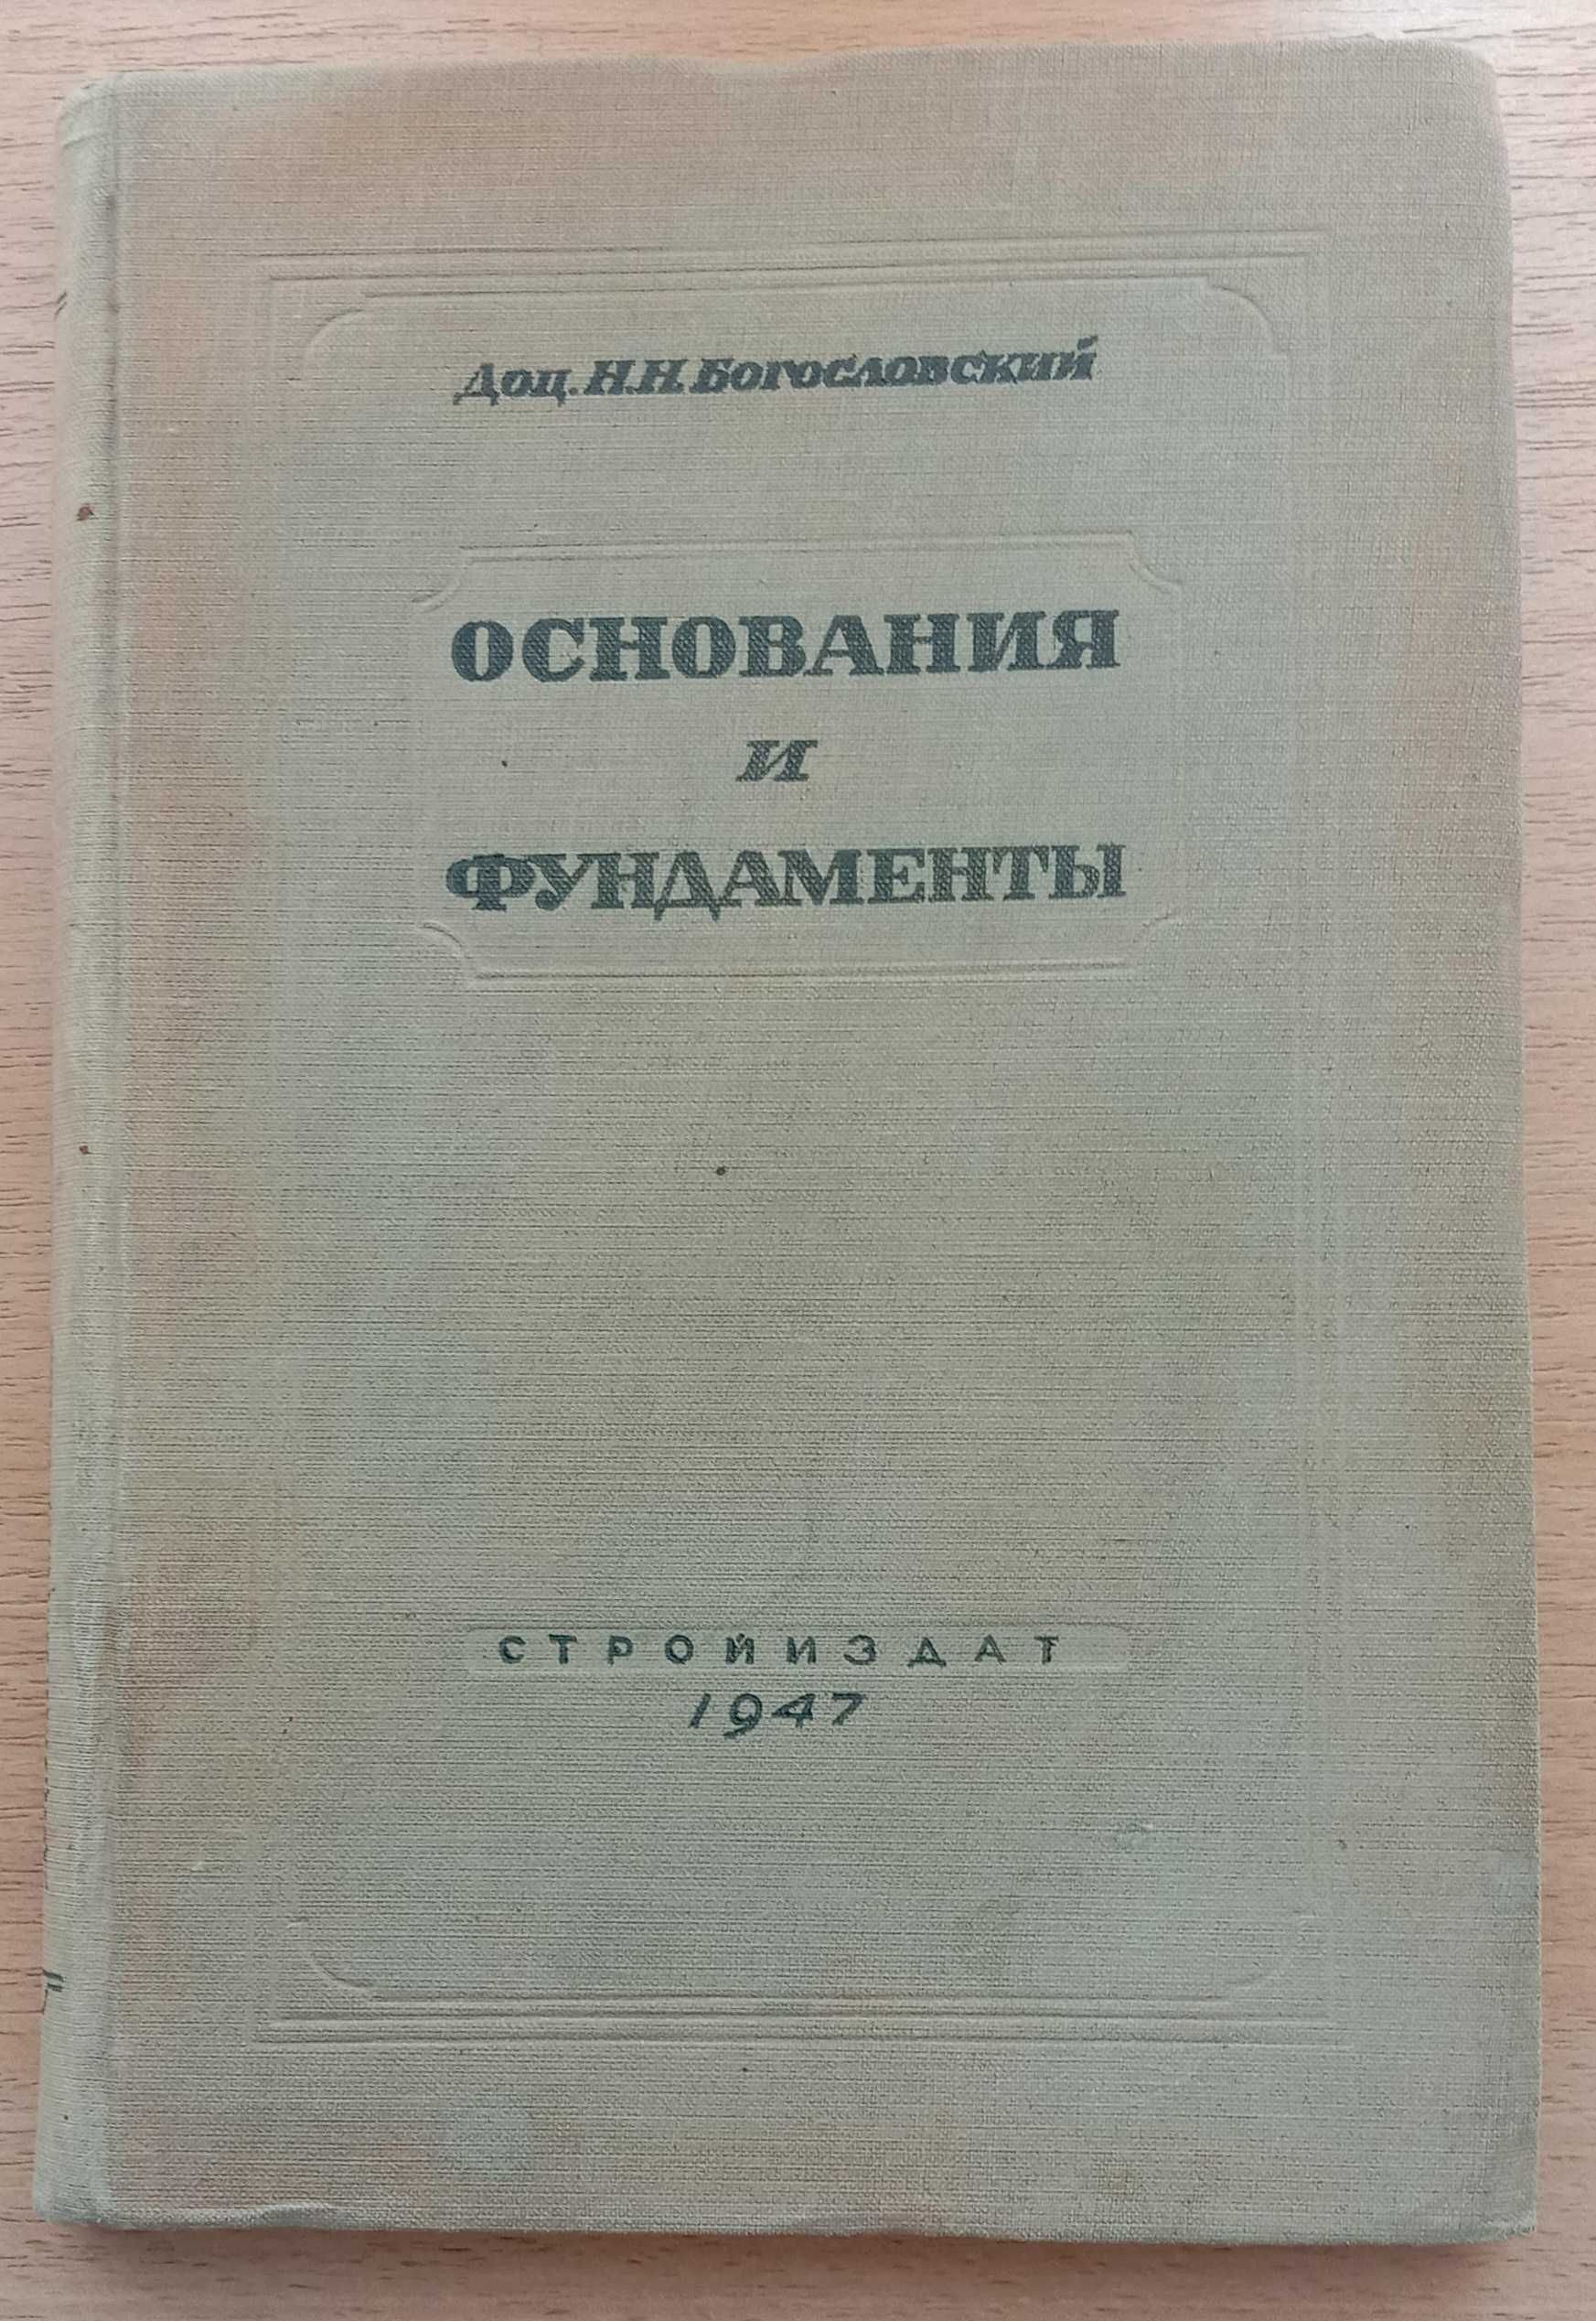 Книга «ОСНОВАНИЯ И ФУНДАМЕНТЫ». Автор Богословский Н. Н. - 1947 г.